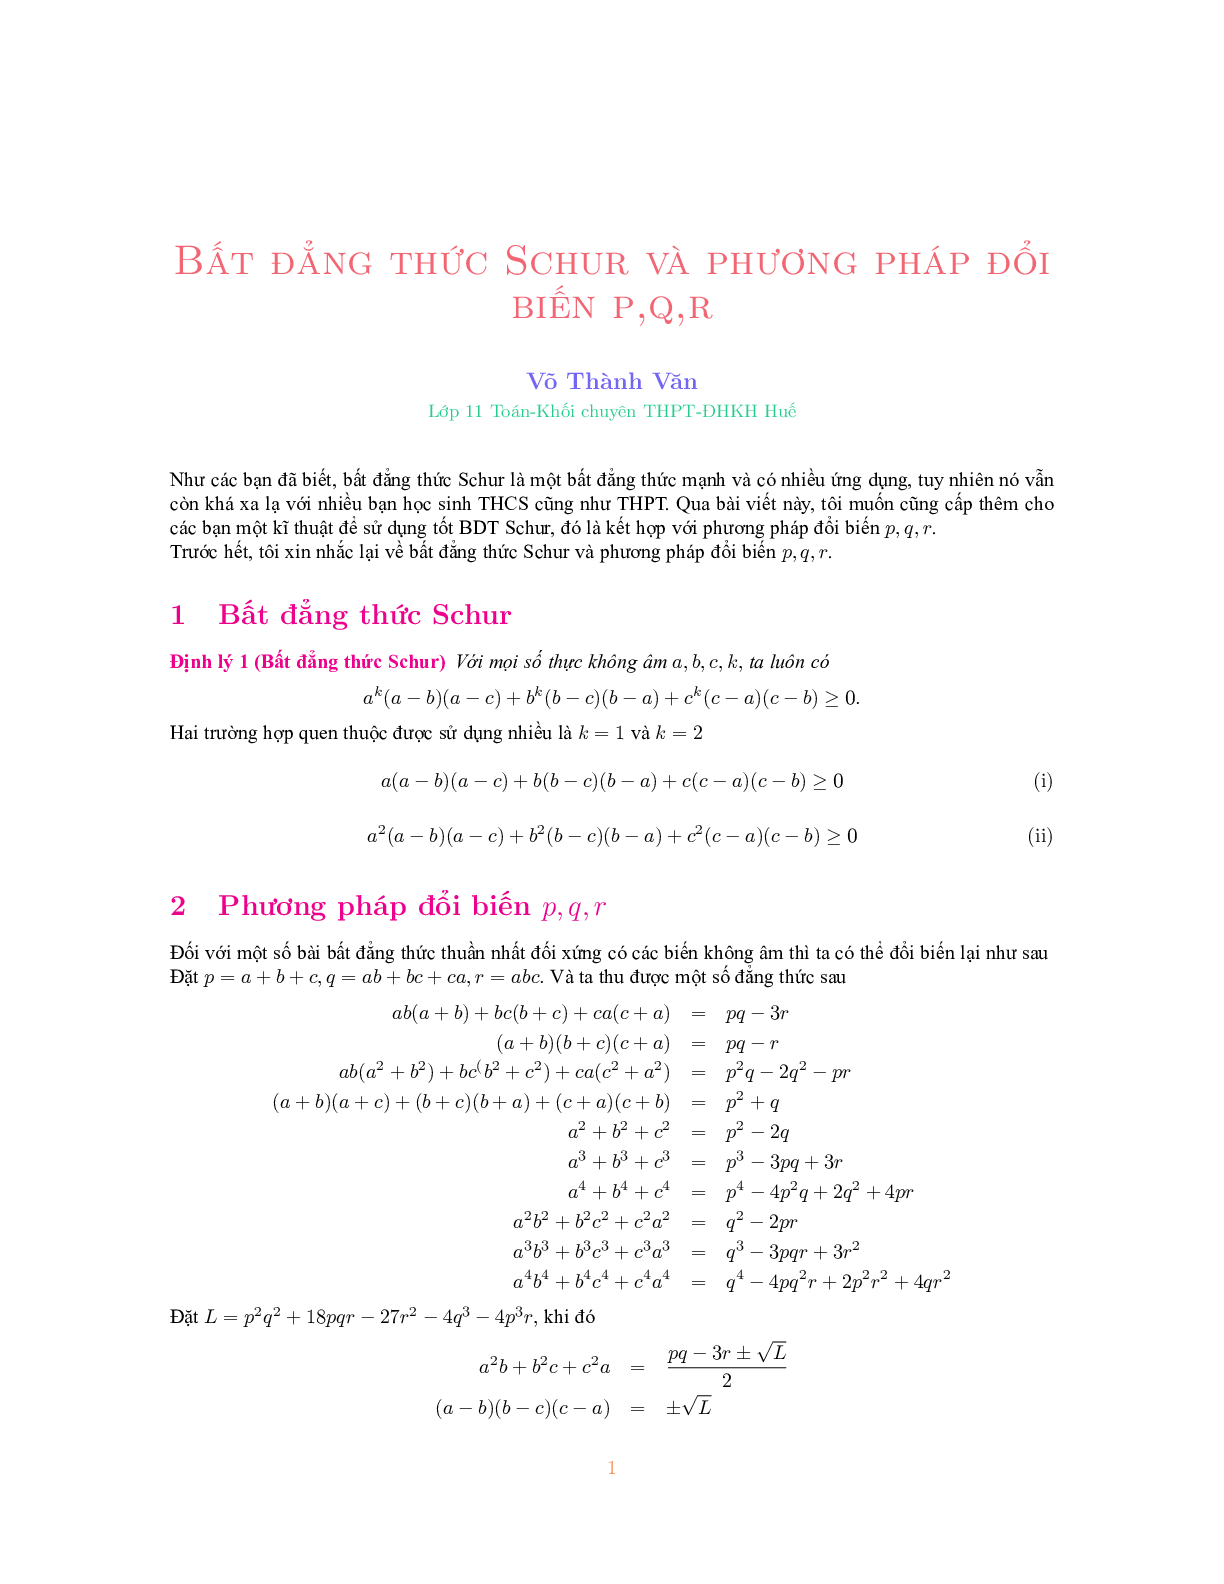 Bất đẳng thức Schur và phương pháp đổi biến P, Q, R 2023 đầy đủ, chi tiết (trang 1)